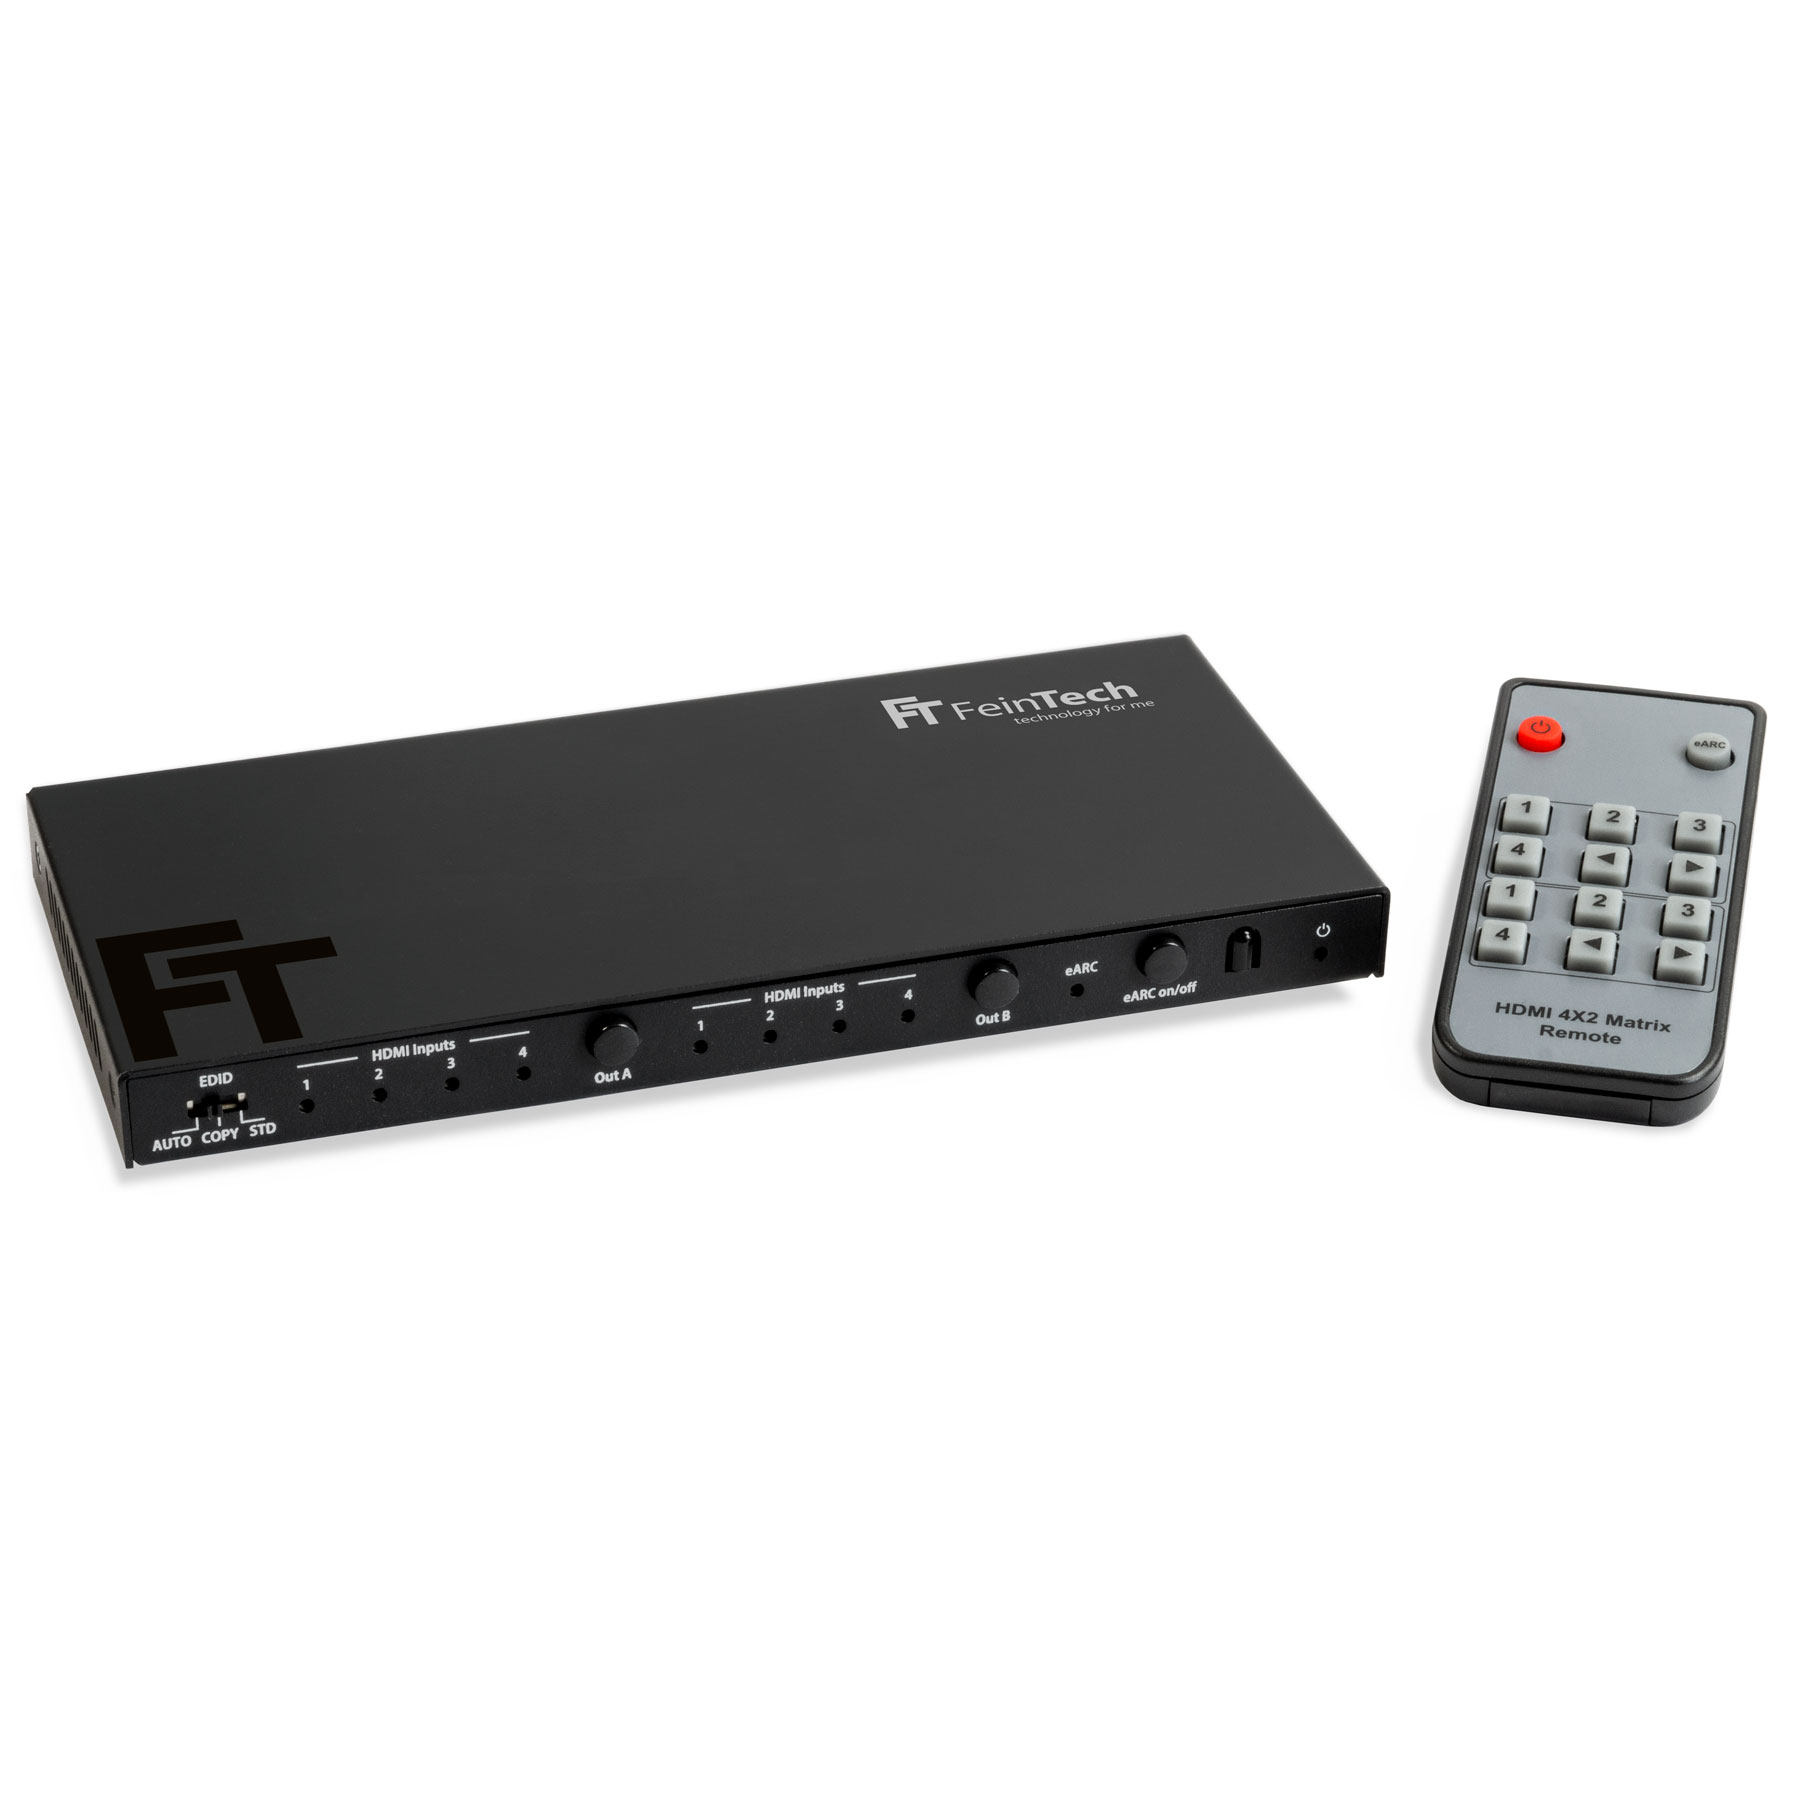 HDMI Matrix Switch VAX04201 FEINTECH